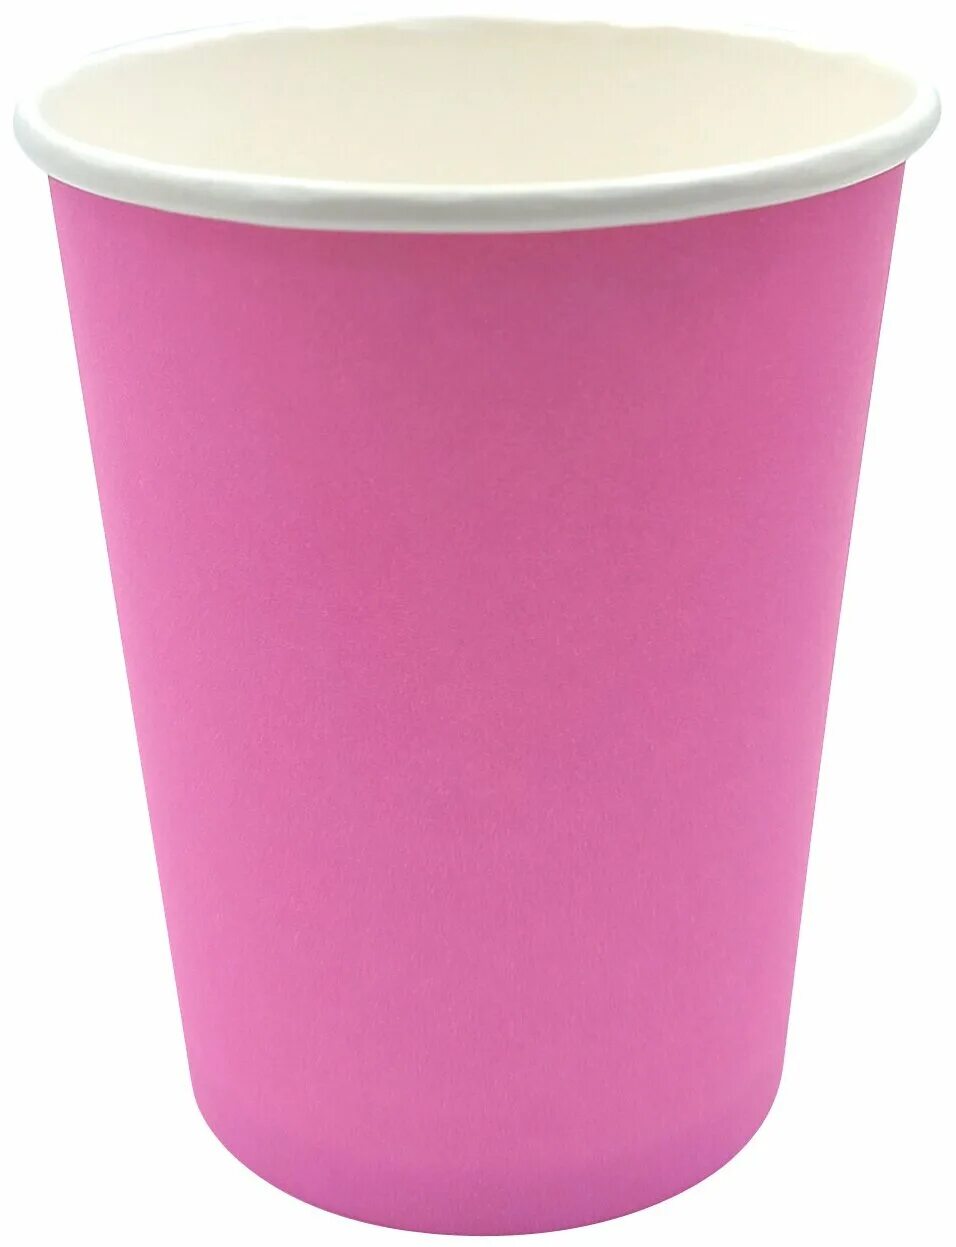 Бумажные стаканчики. Бумажный стаканчик. Стакан бумажный розовый. Стаканчики одноразовые бумажные розовые. Стаканы одноразовые розовые.